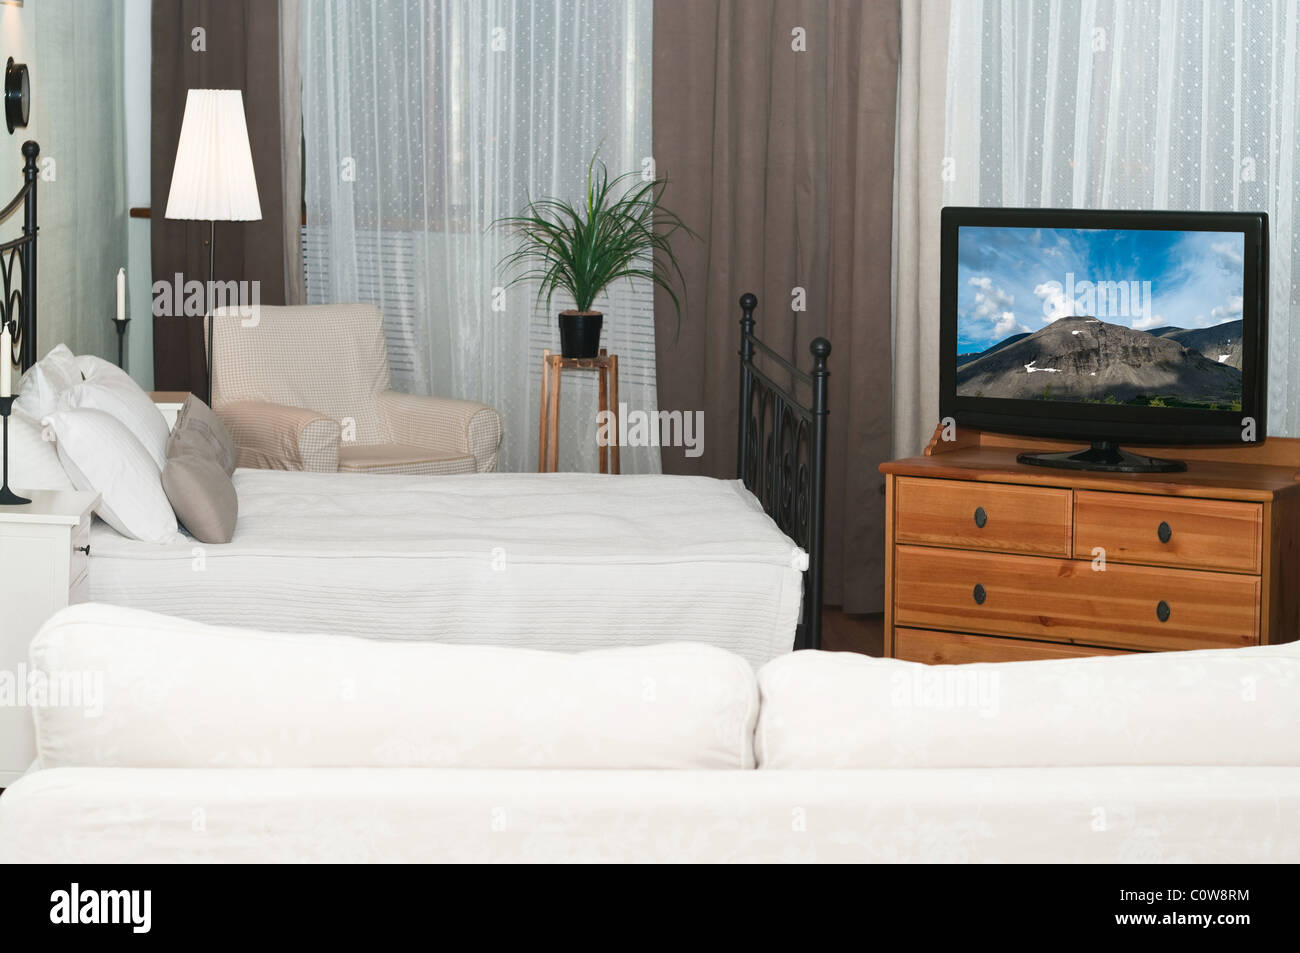 Der große Fernseher in einem Raum vor einem weißen Sofa. Ein Schlafzimmer  mit einem Bett Stockfotografie - Alamy